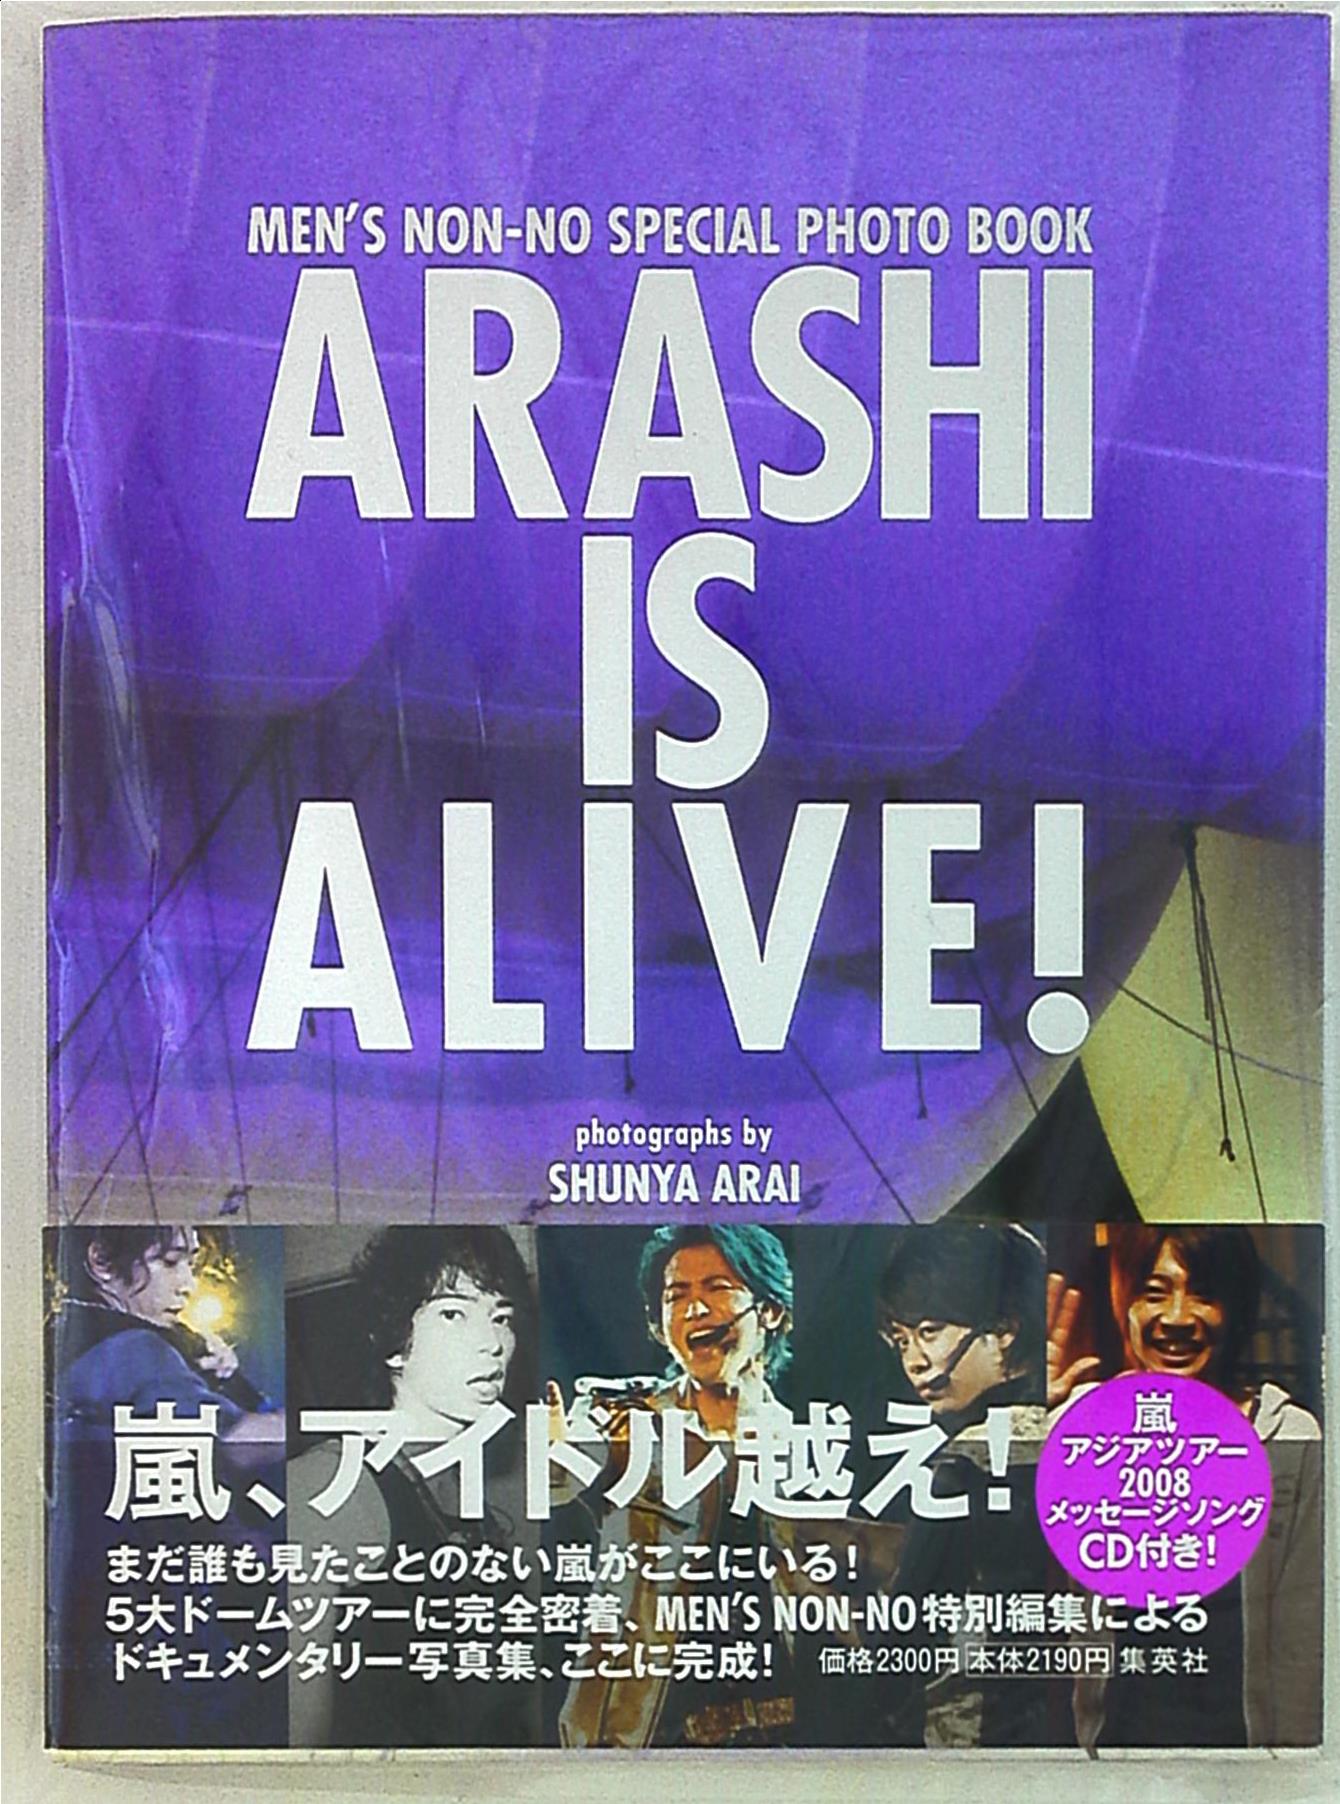 嵐 ARASHI IS ALIVE! *初版CD付 まんだらけ Mandarake